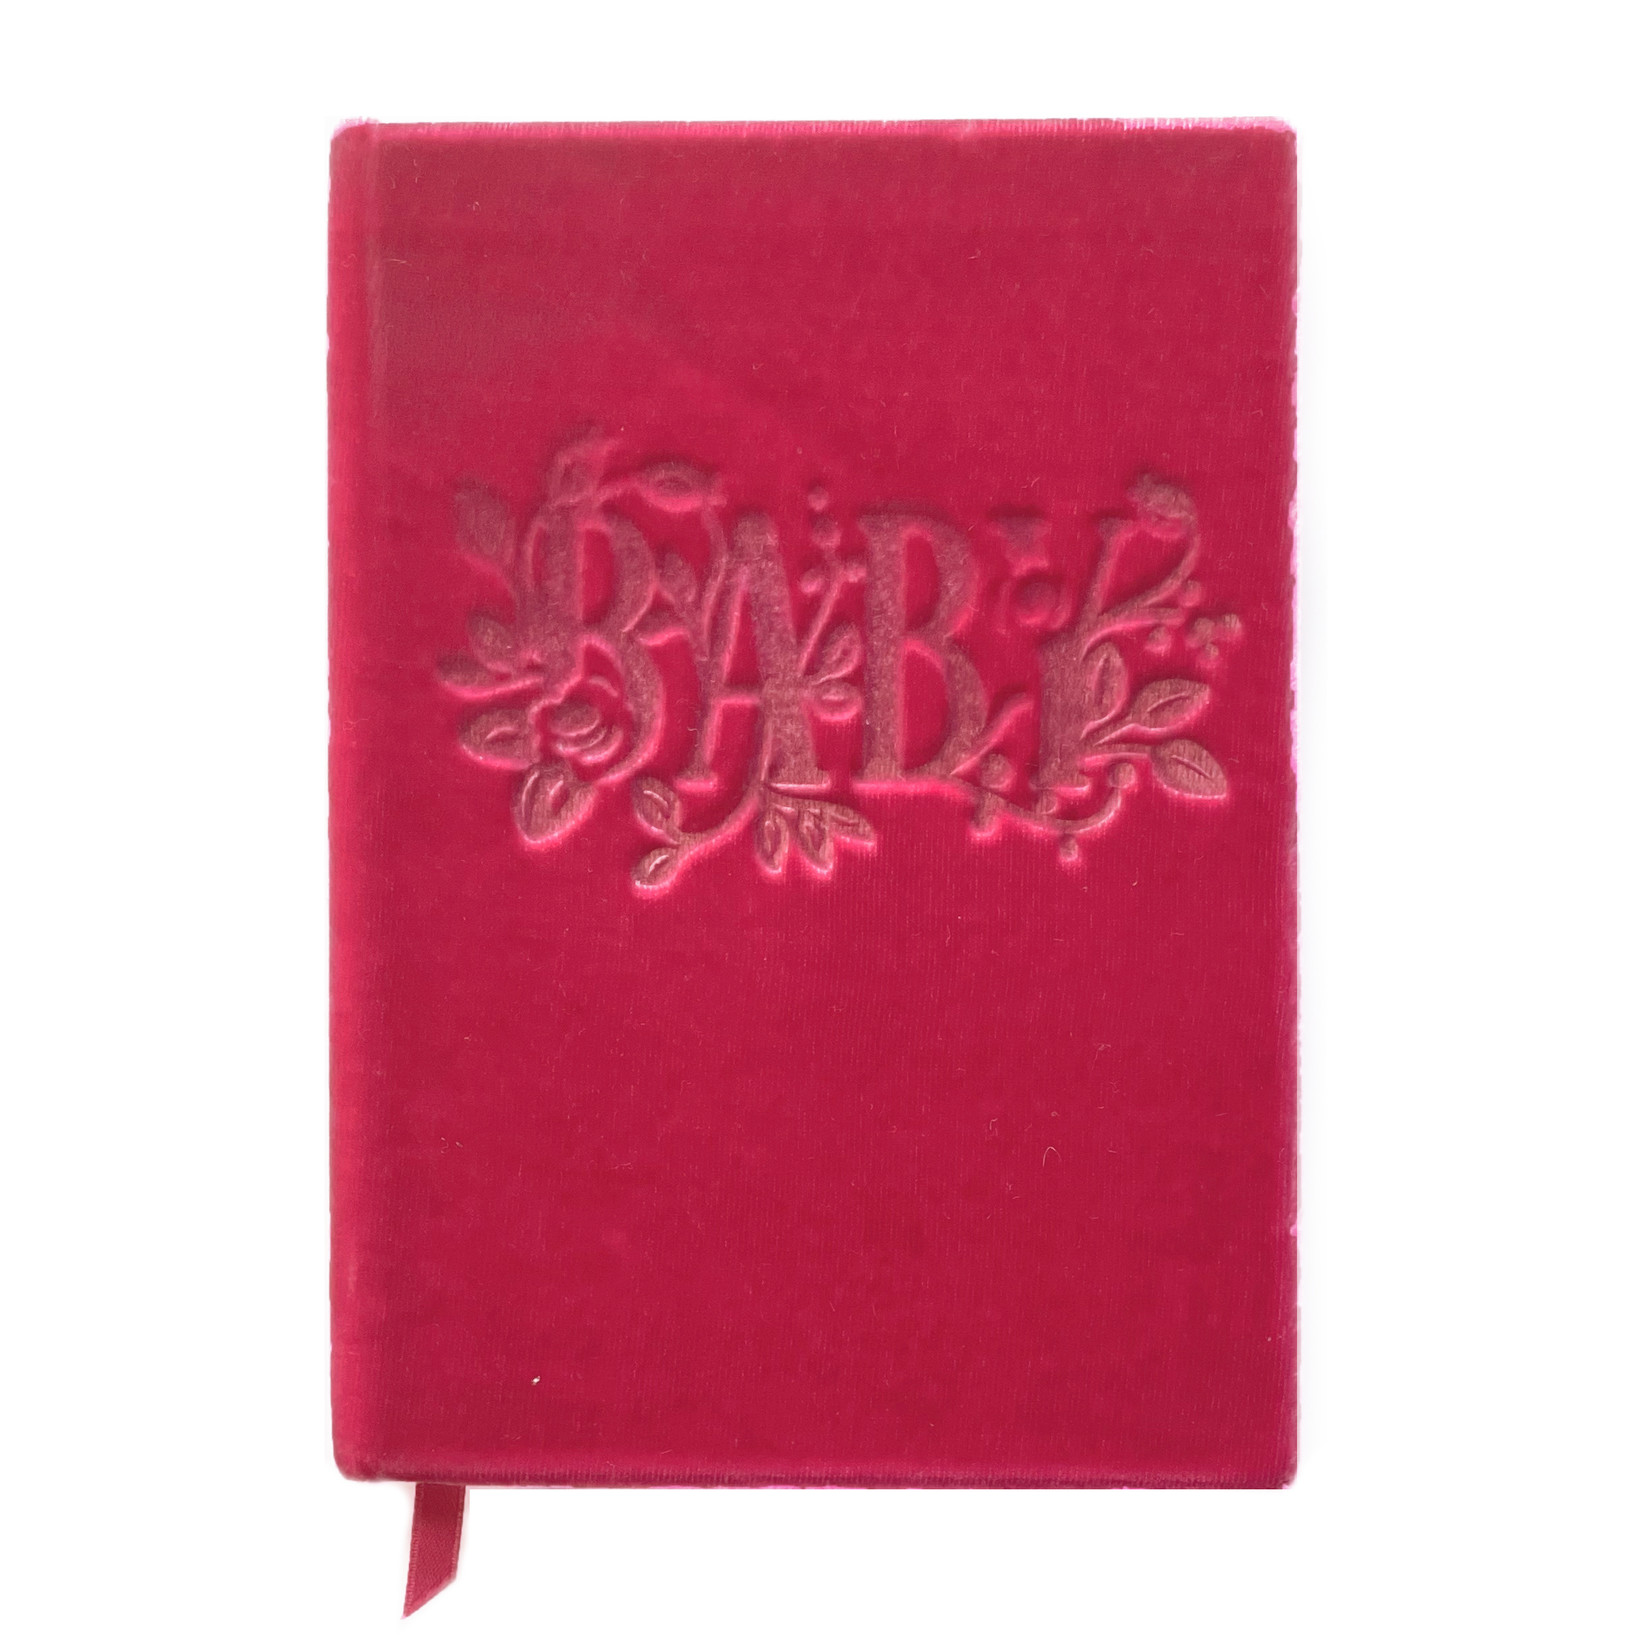 The First Snow "Baby" Velvet Notebook - Desmond Pink